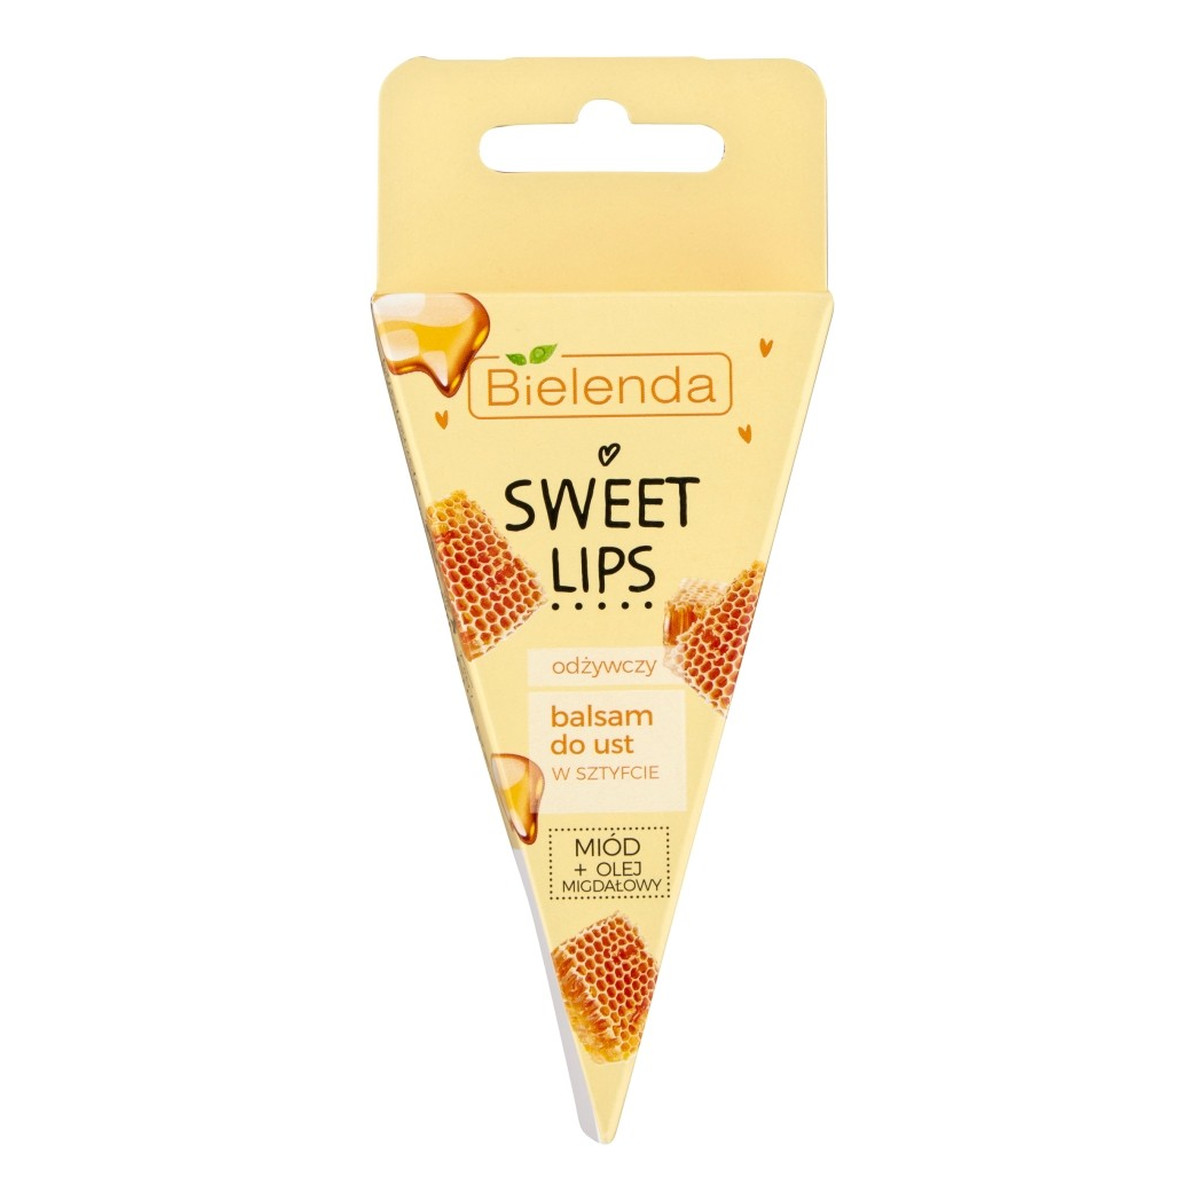 Bielenda Sweet Lips Balsam do ust odżywczy - Miód i Olej Migdałowy 3g